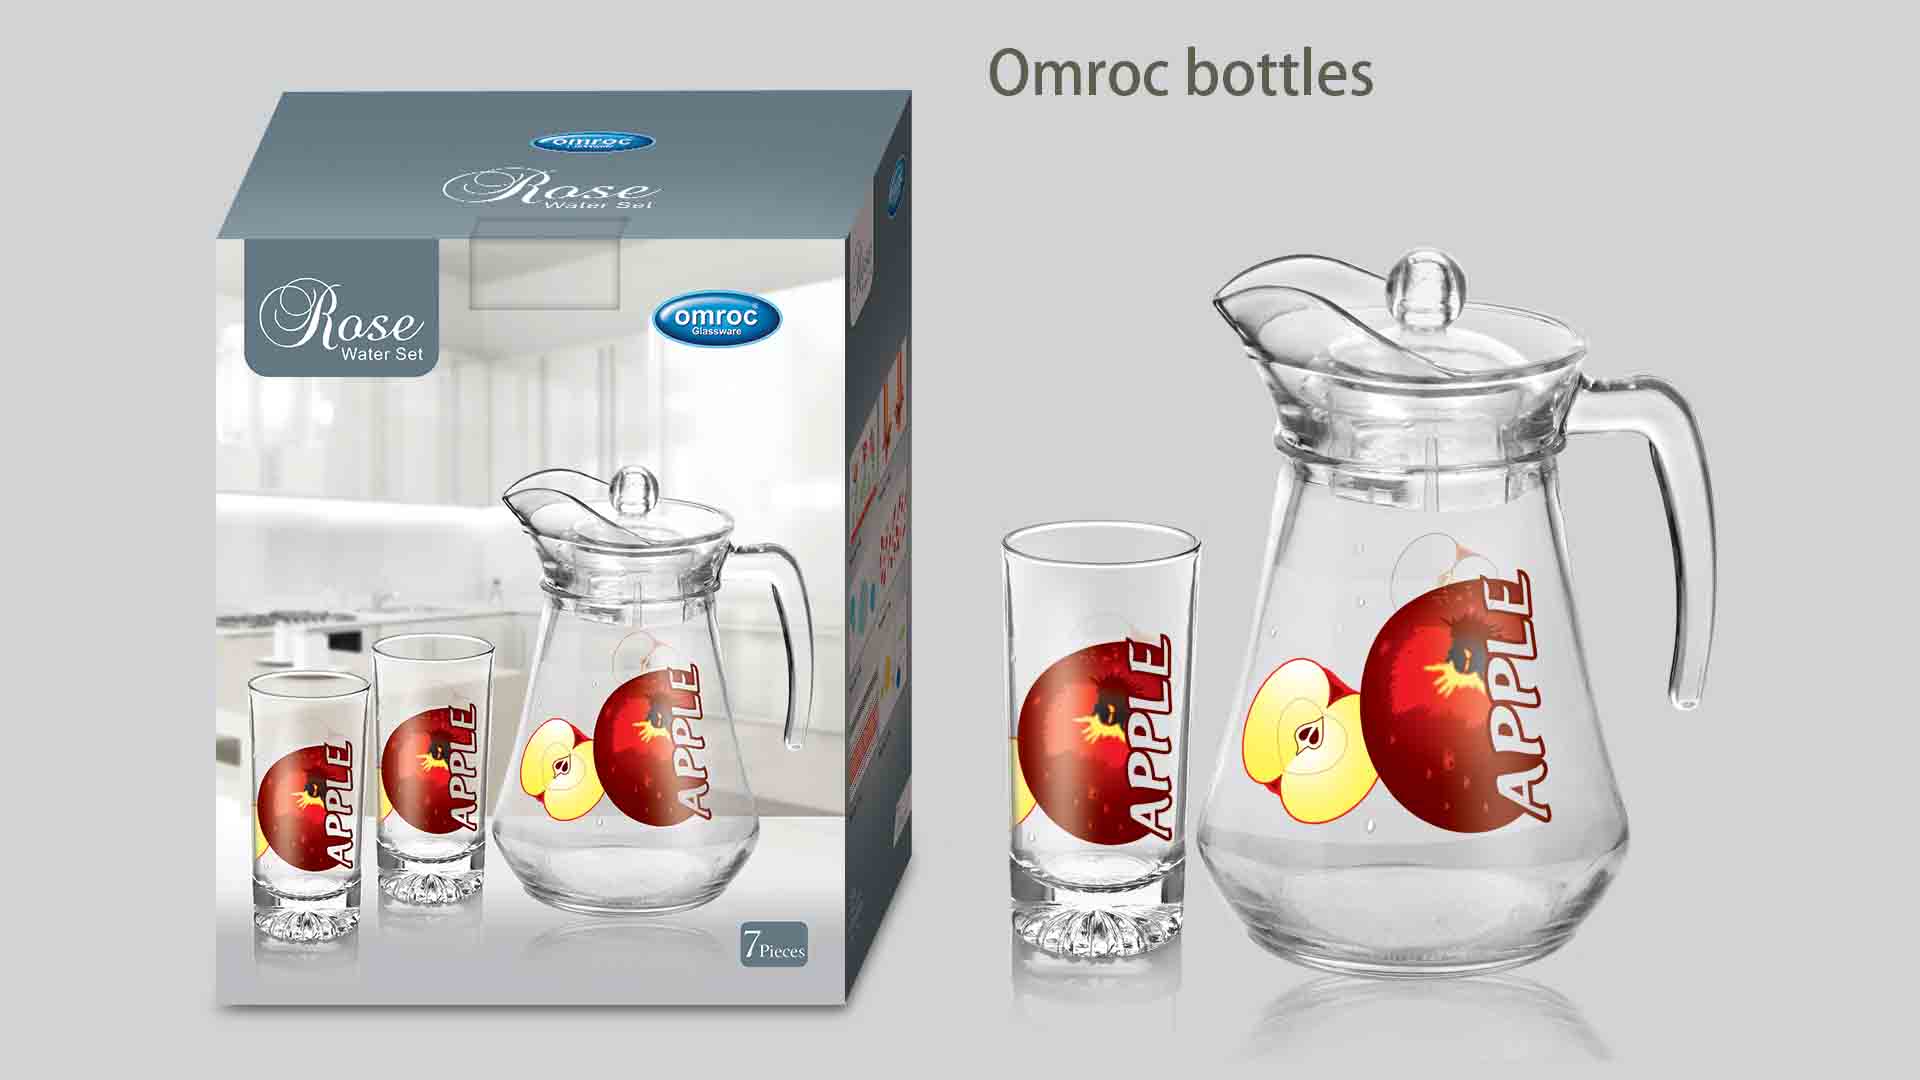 Omroc bottles